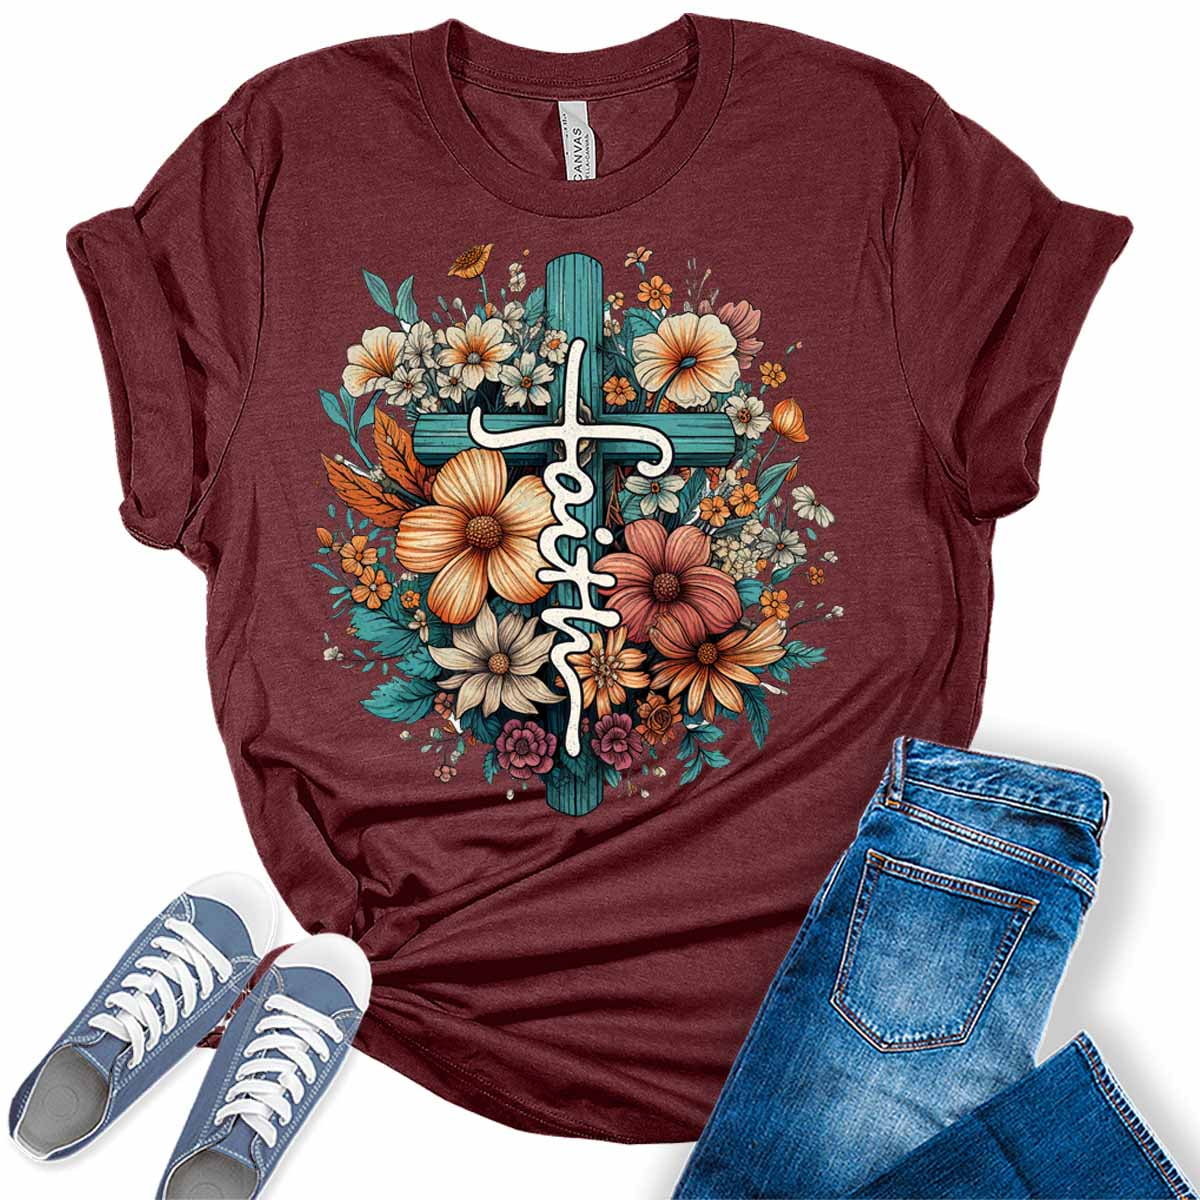 GyftWear Faith Shirt Floral Cross Tshirts Christian Graphic Tees for ...